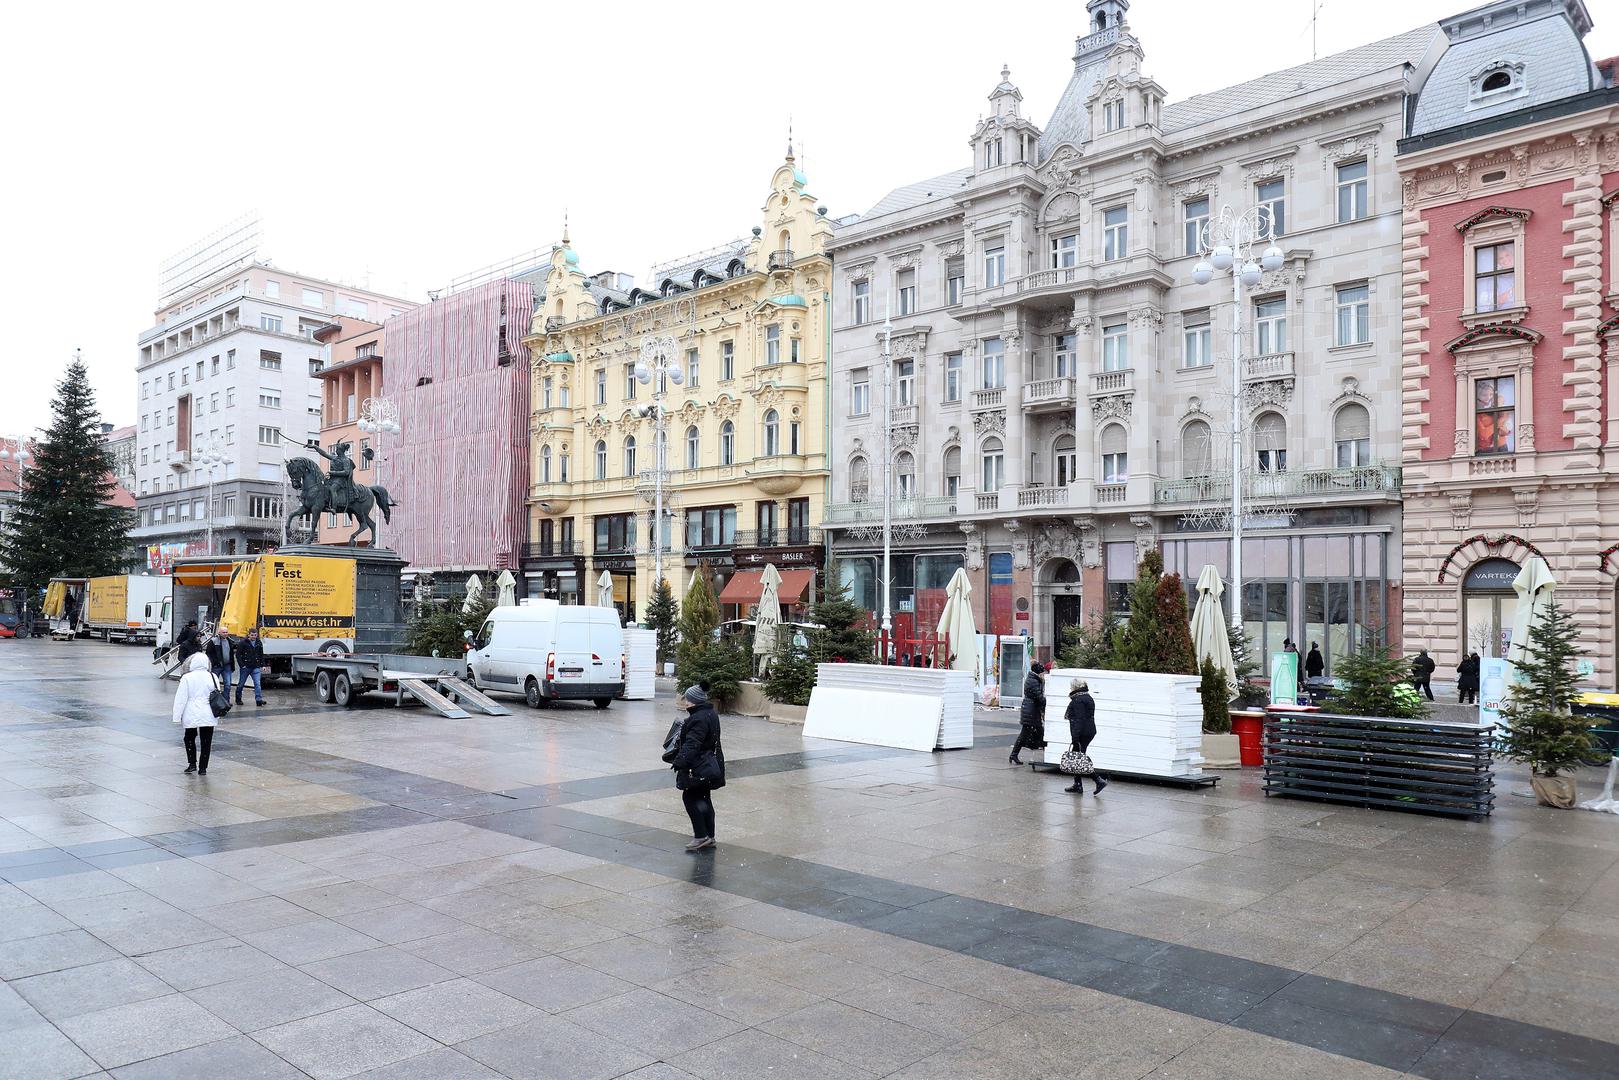 Jučer je završio Advent u Zagrebu, a već danas uklanjaju se kućice i sav popratni sadržaj iz središta grada.